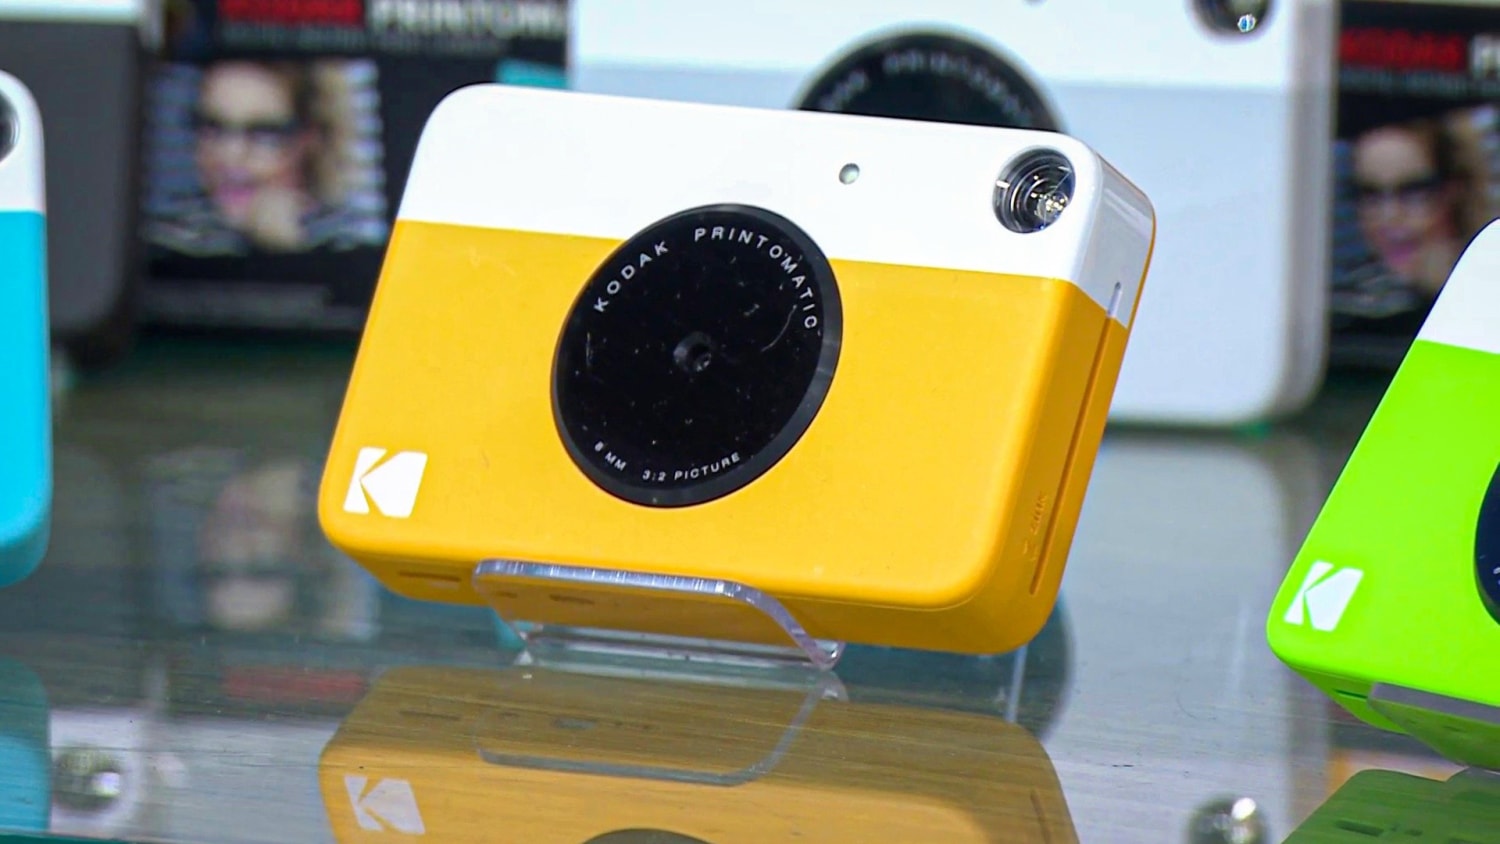 Kodak Printomatic Instant Print Camera - Digital Imaging Reporter